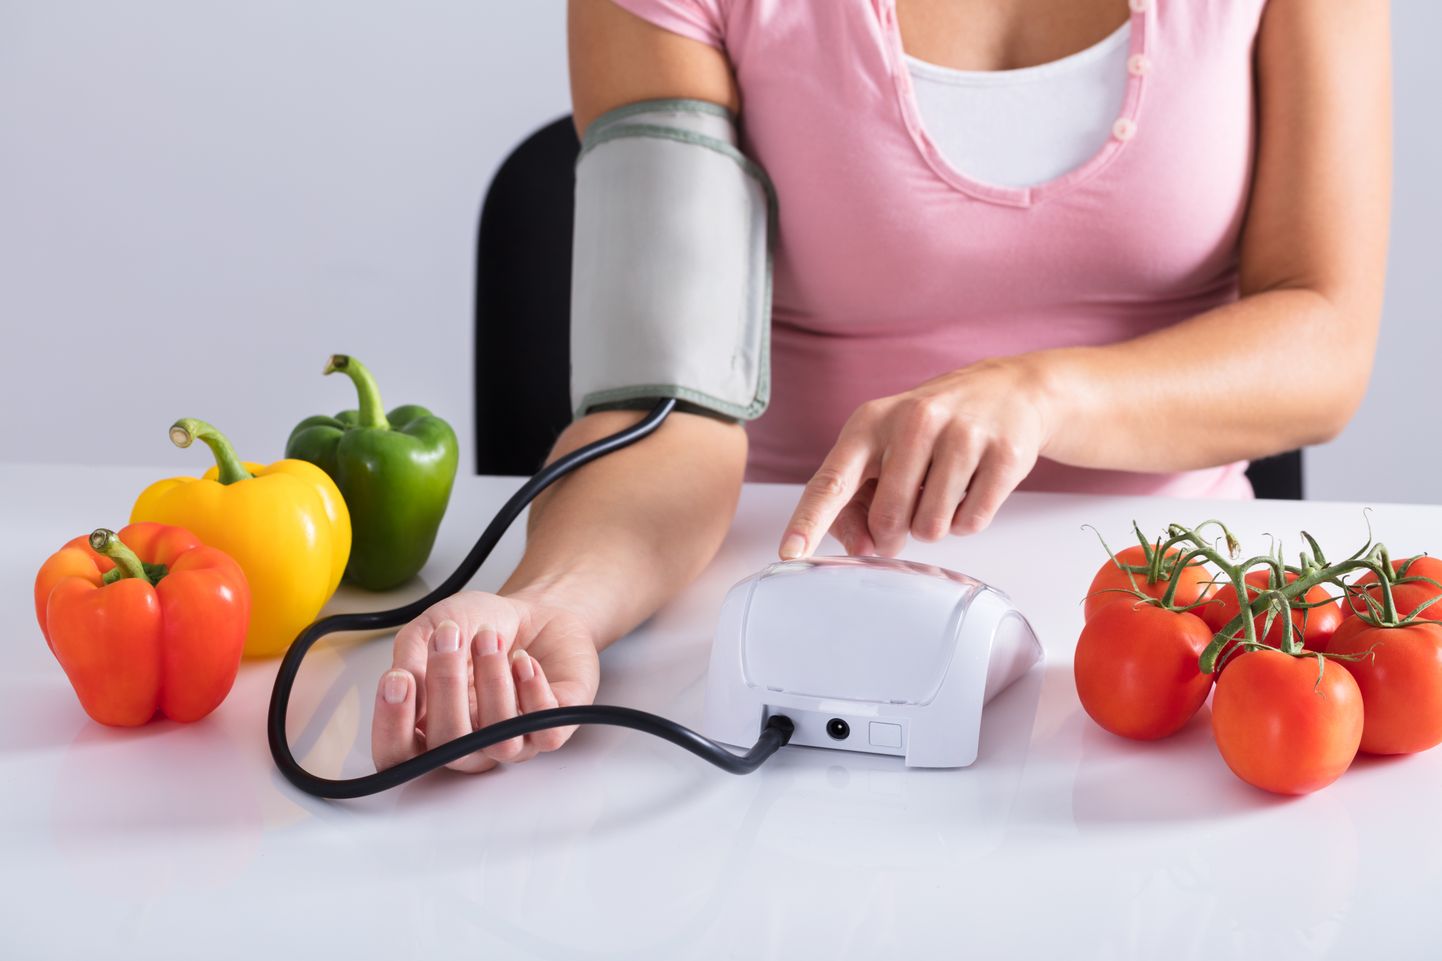 Kõrget vererõhku saab ennetada ka tervisliku toitumise ja piisava liikumisega.